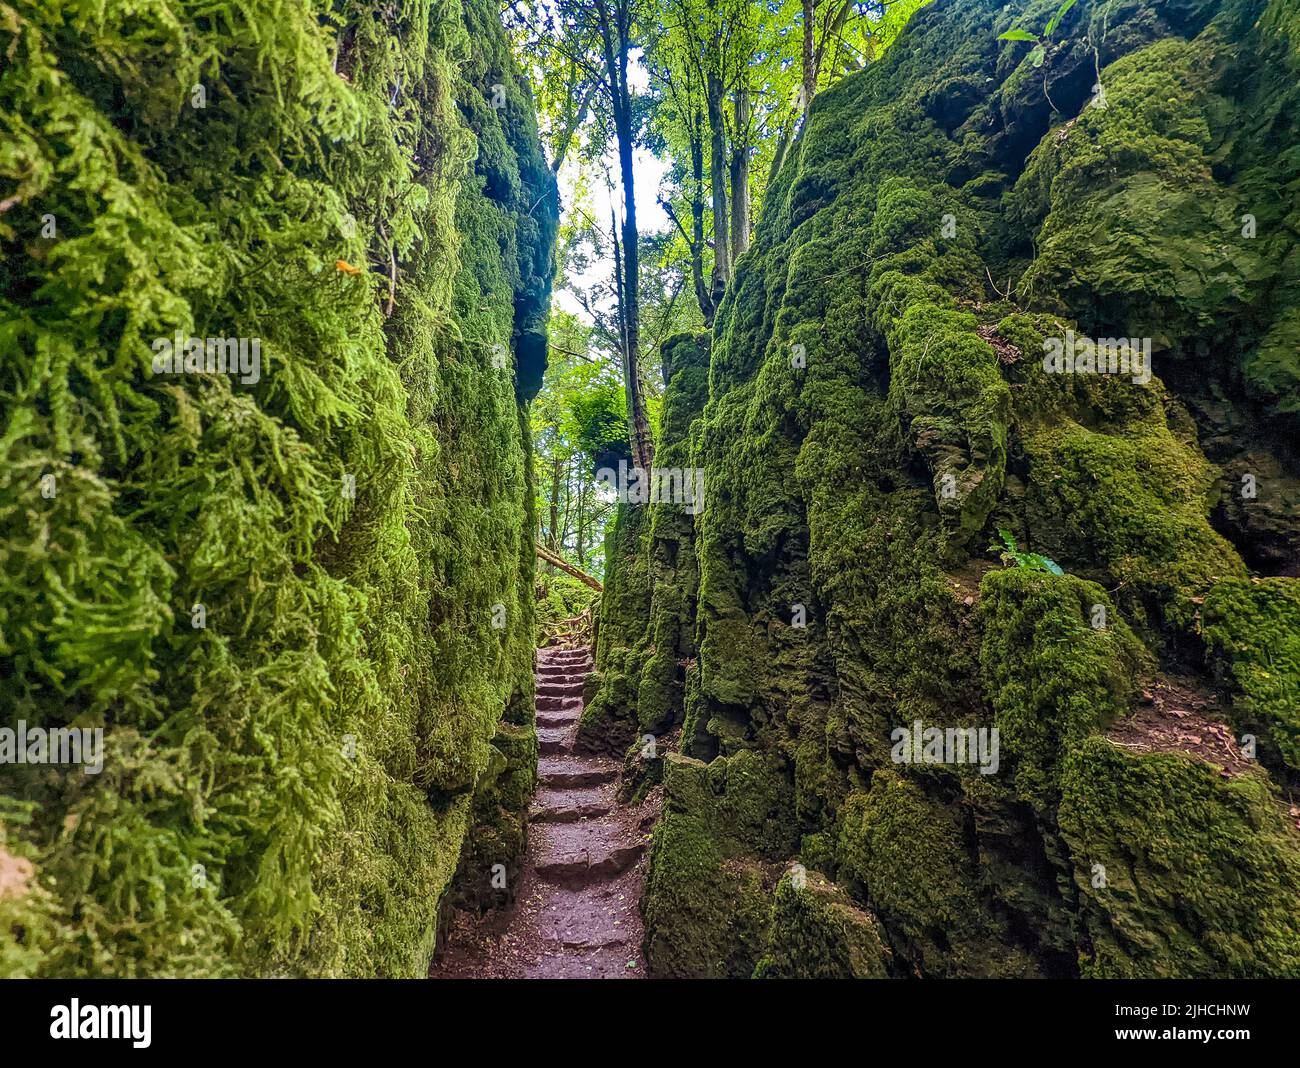 Las rocas cubiertas de musgo de Puzzlewood, un bosque cerca de Coleford, el Bosque Real de Dean, Reino Unido. Foto de stock